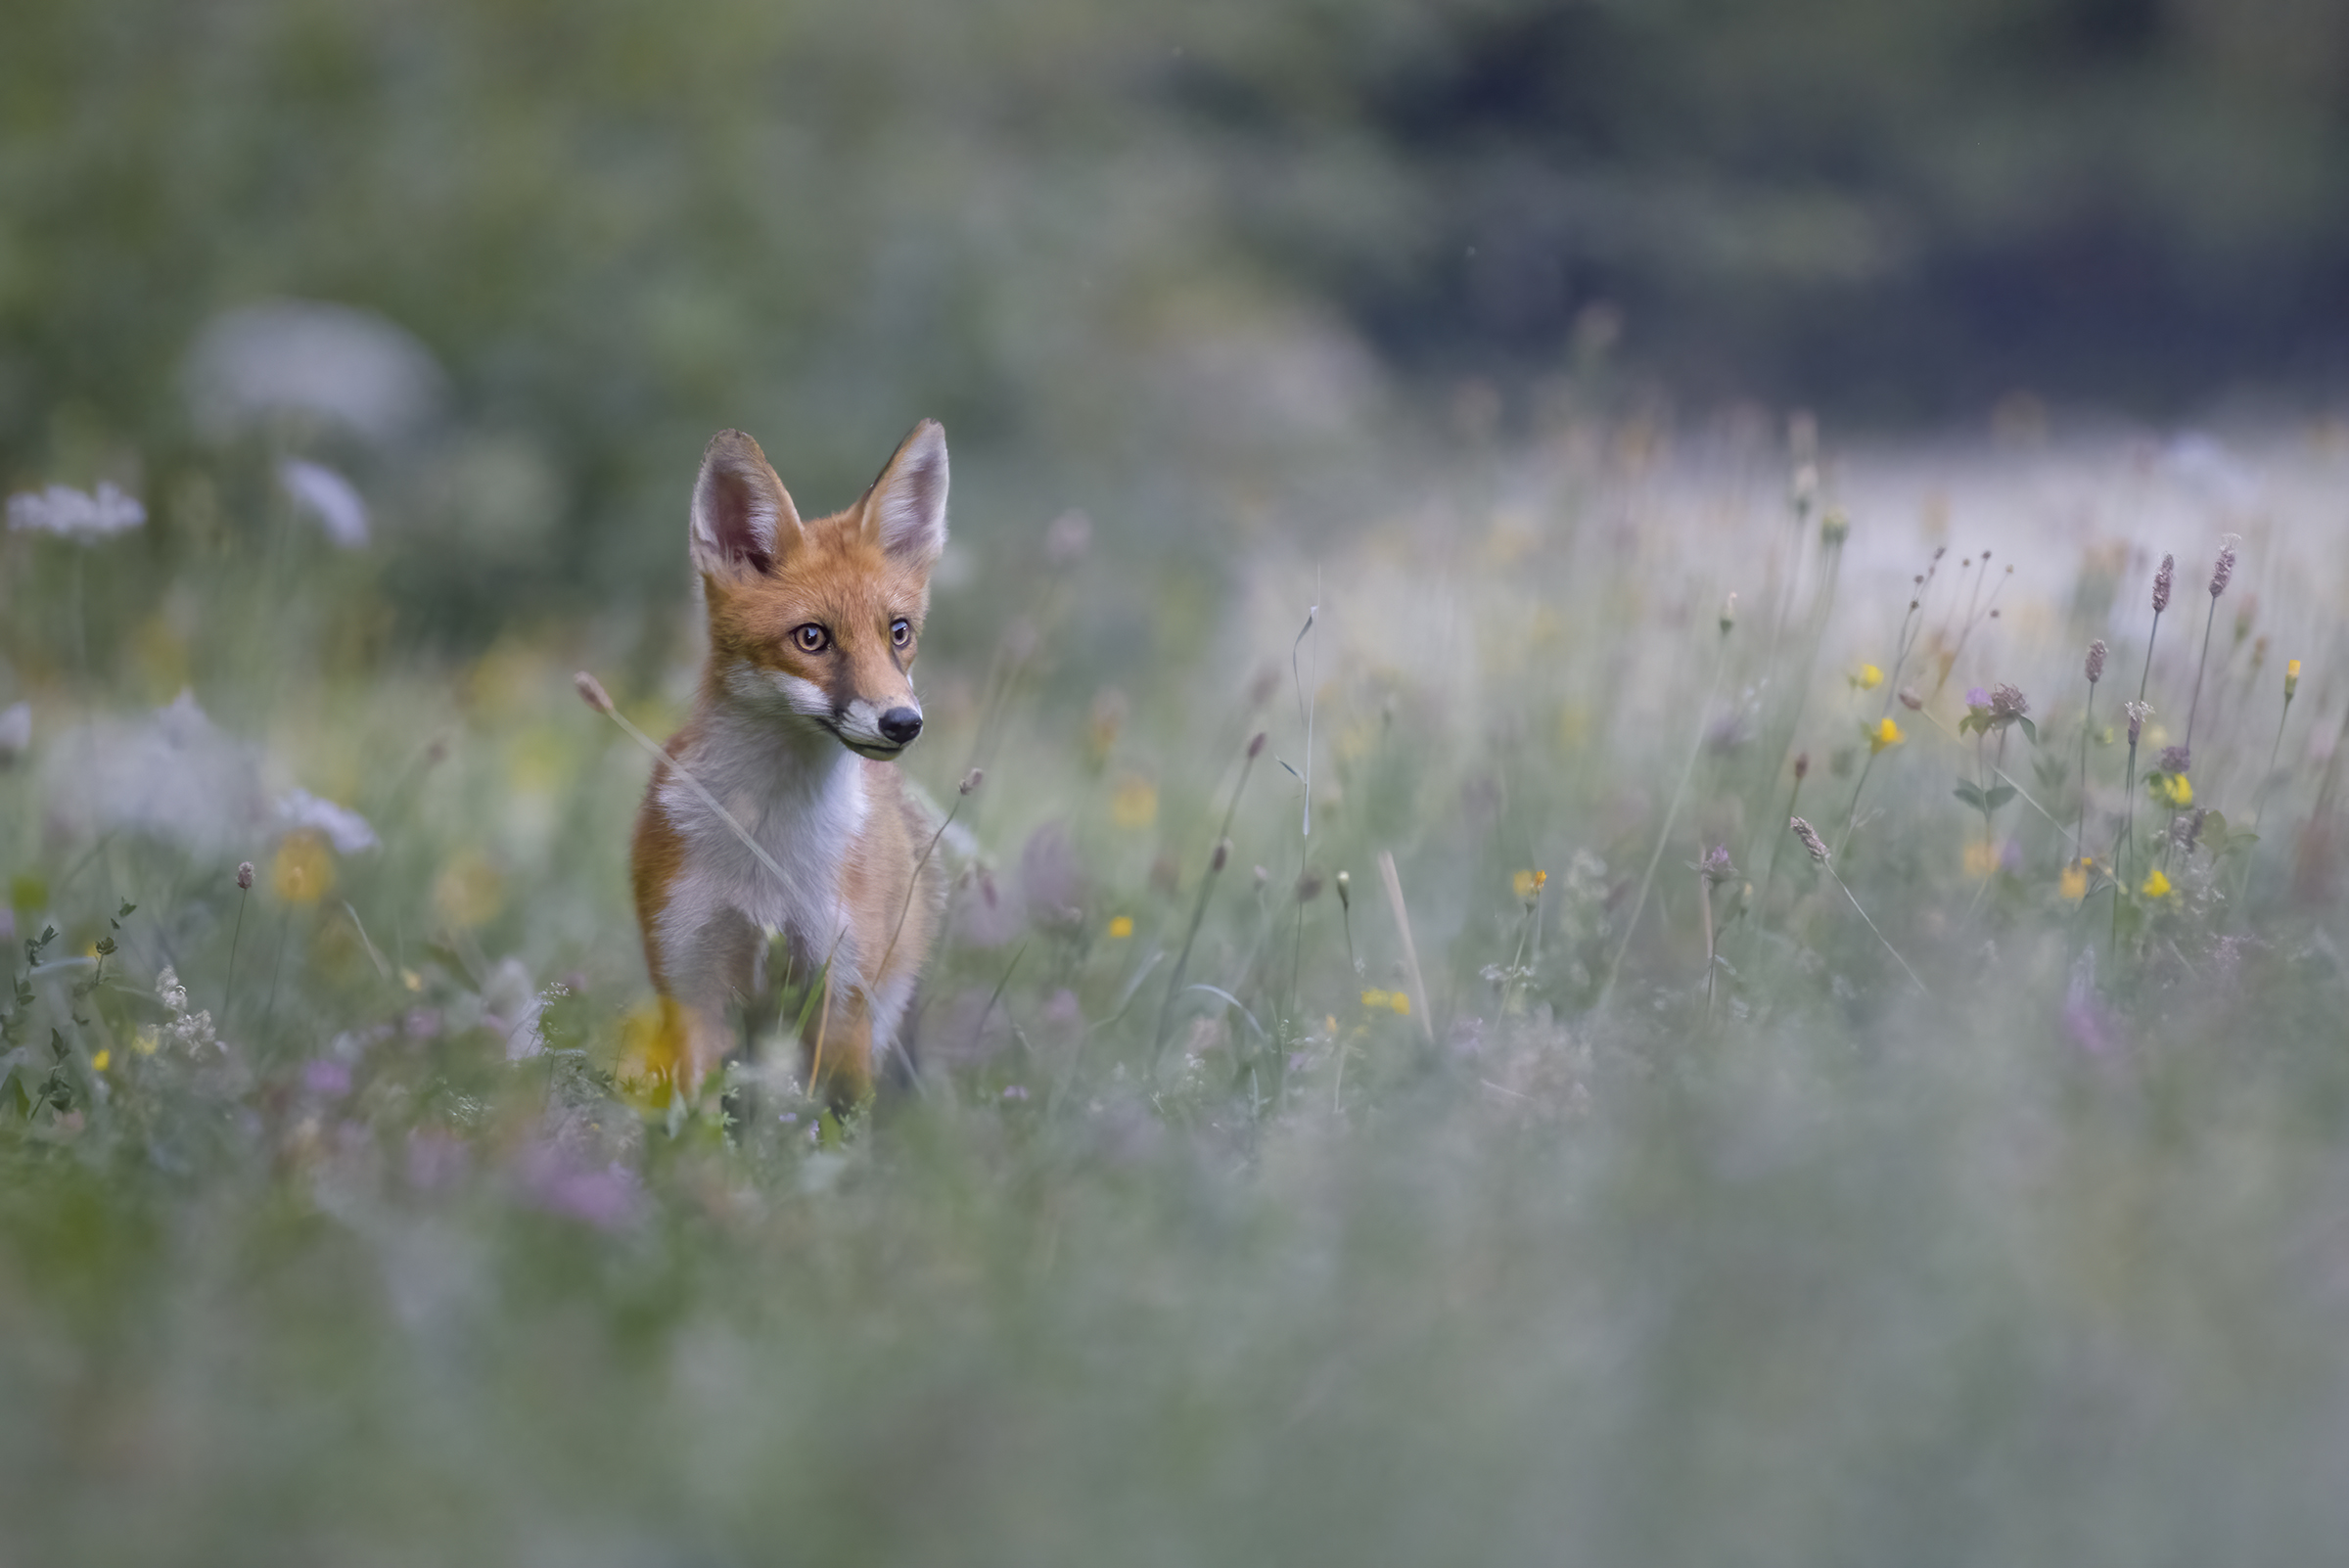 Where foxes walk...